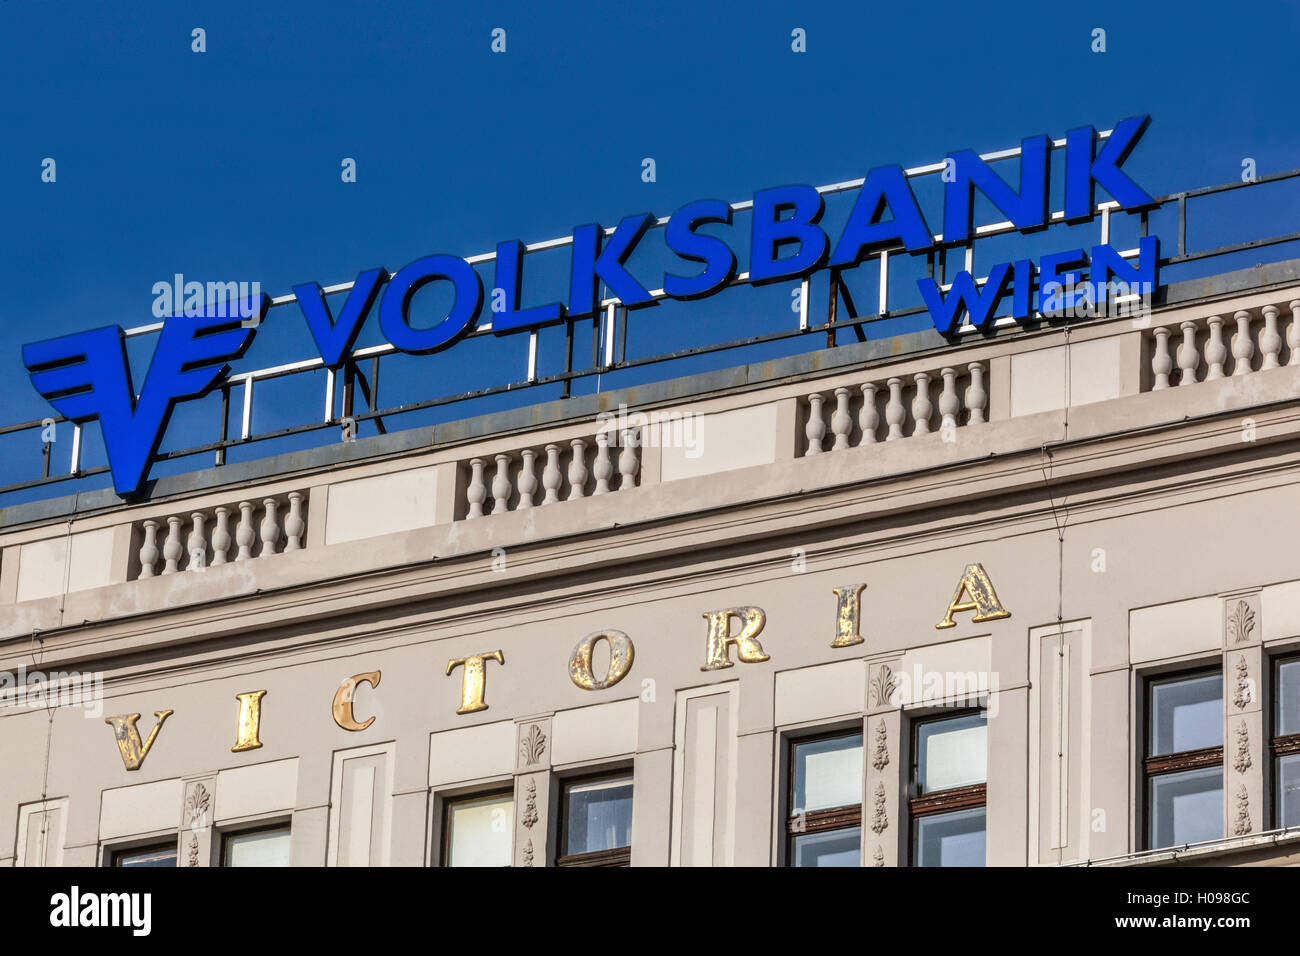 Volksbank Wien logo, sign, Vienna, Austria Stock Photo